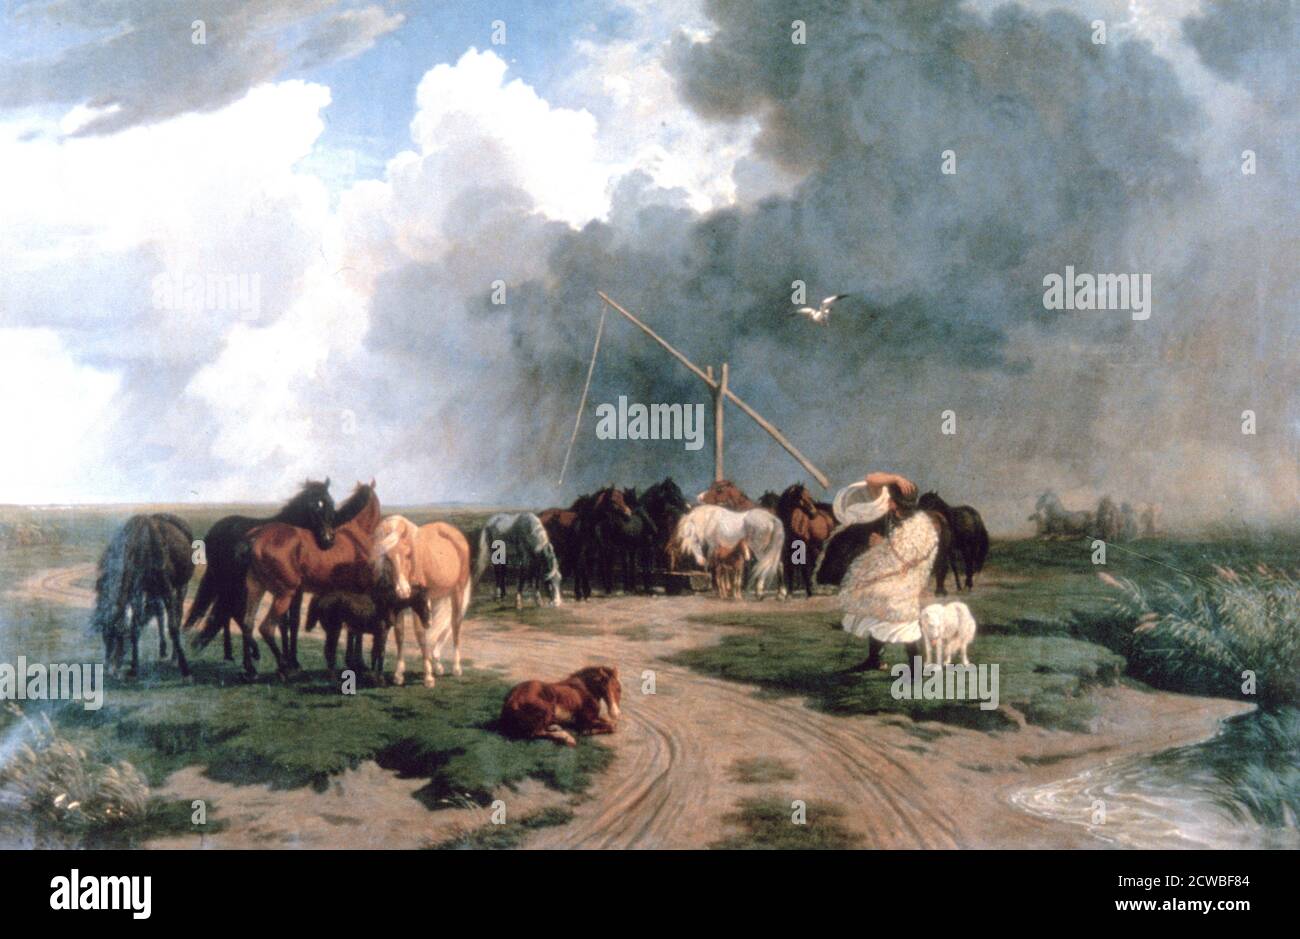 Chevaux dans la tempête, 1862. Artiste: Karoly Lotz. Karoly Lotz (1833-1904) est un peintre germano-hongrois. Banque D'Images